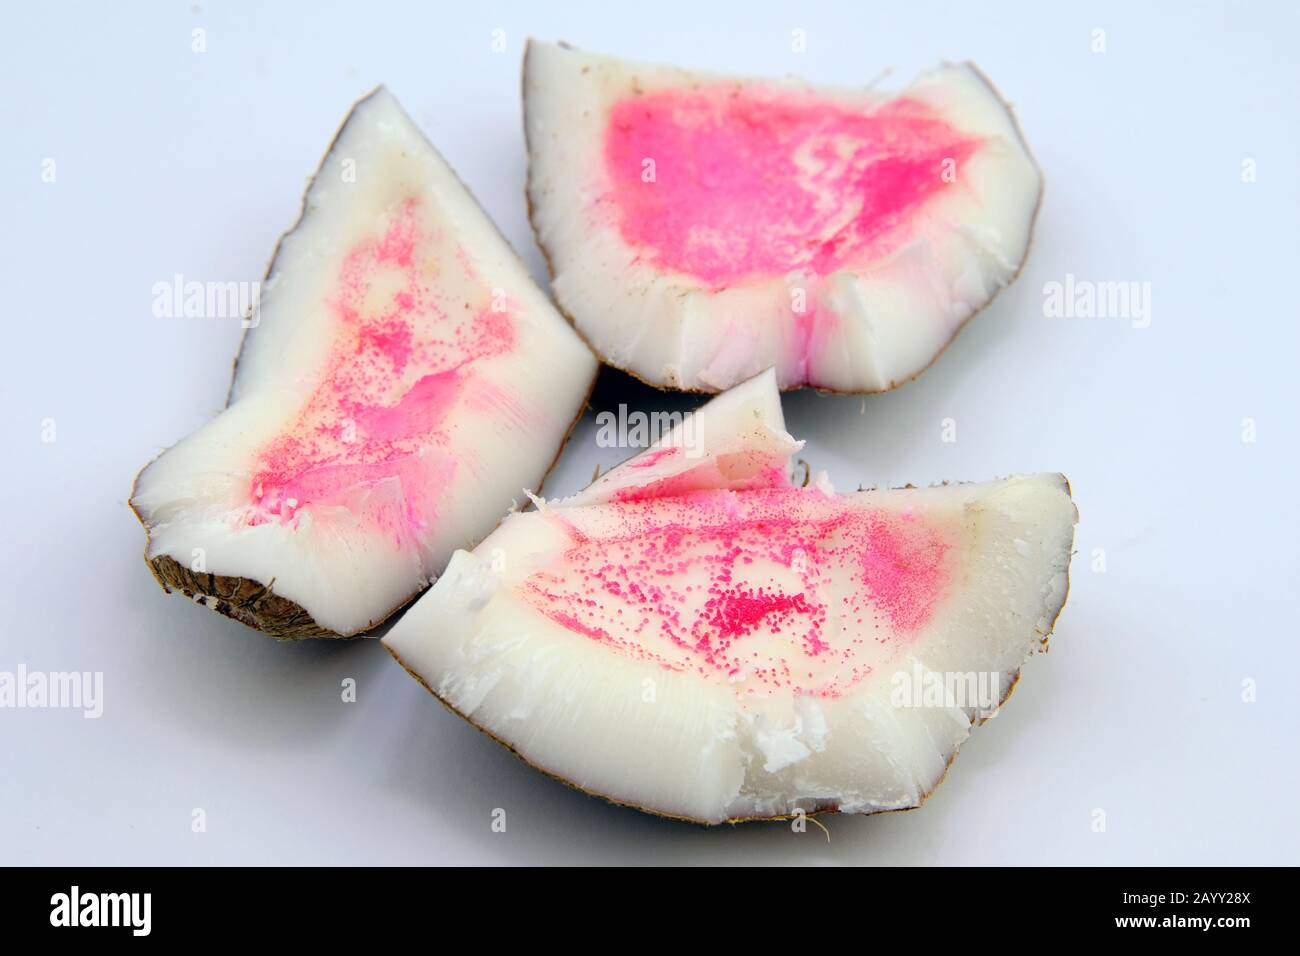 Manchas rosas en el coco. El coco se volvió rosado después de abrirse debido a la polifenol oxidasa o al ataque microbiano. Foto de stock